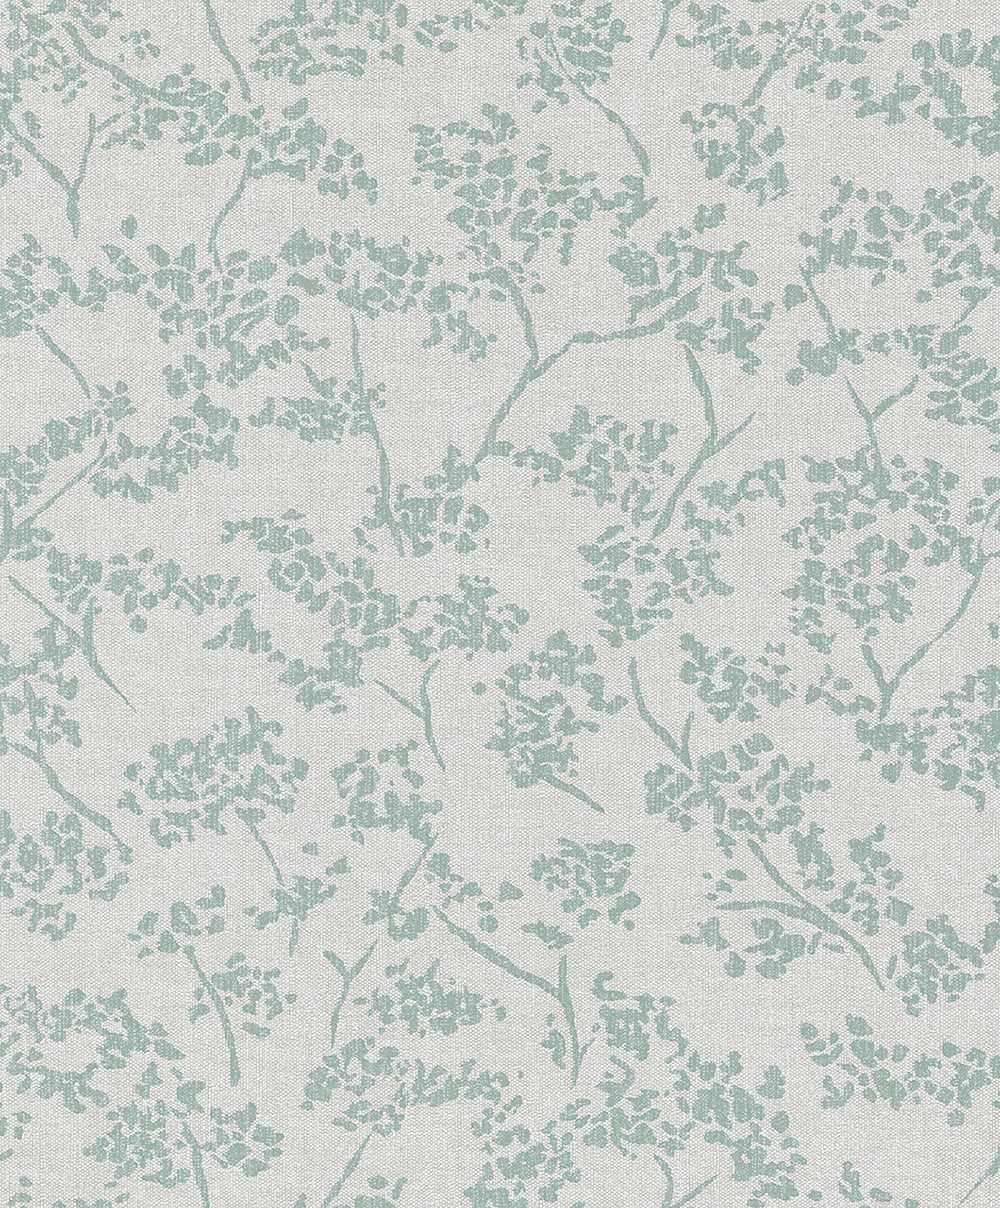 Schoner Wohnen New Spirit - Vintage Floral botanical wallpaper Marburg Roll Green  32701